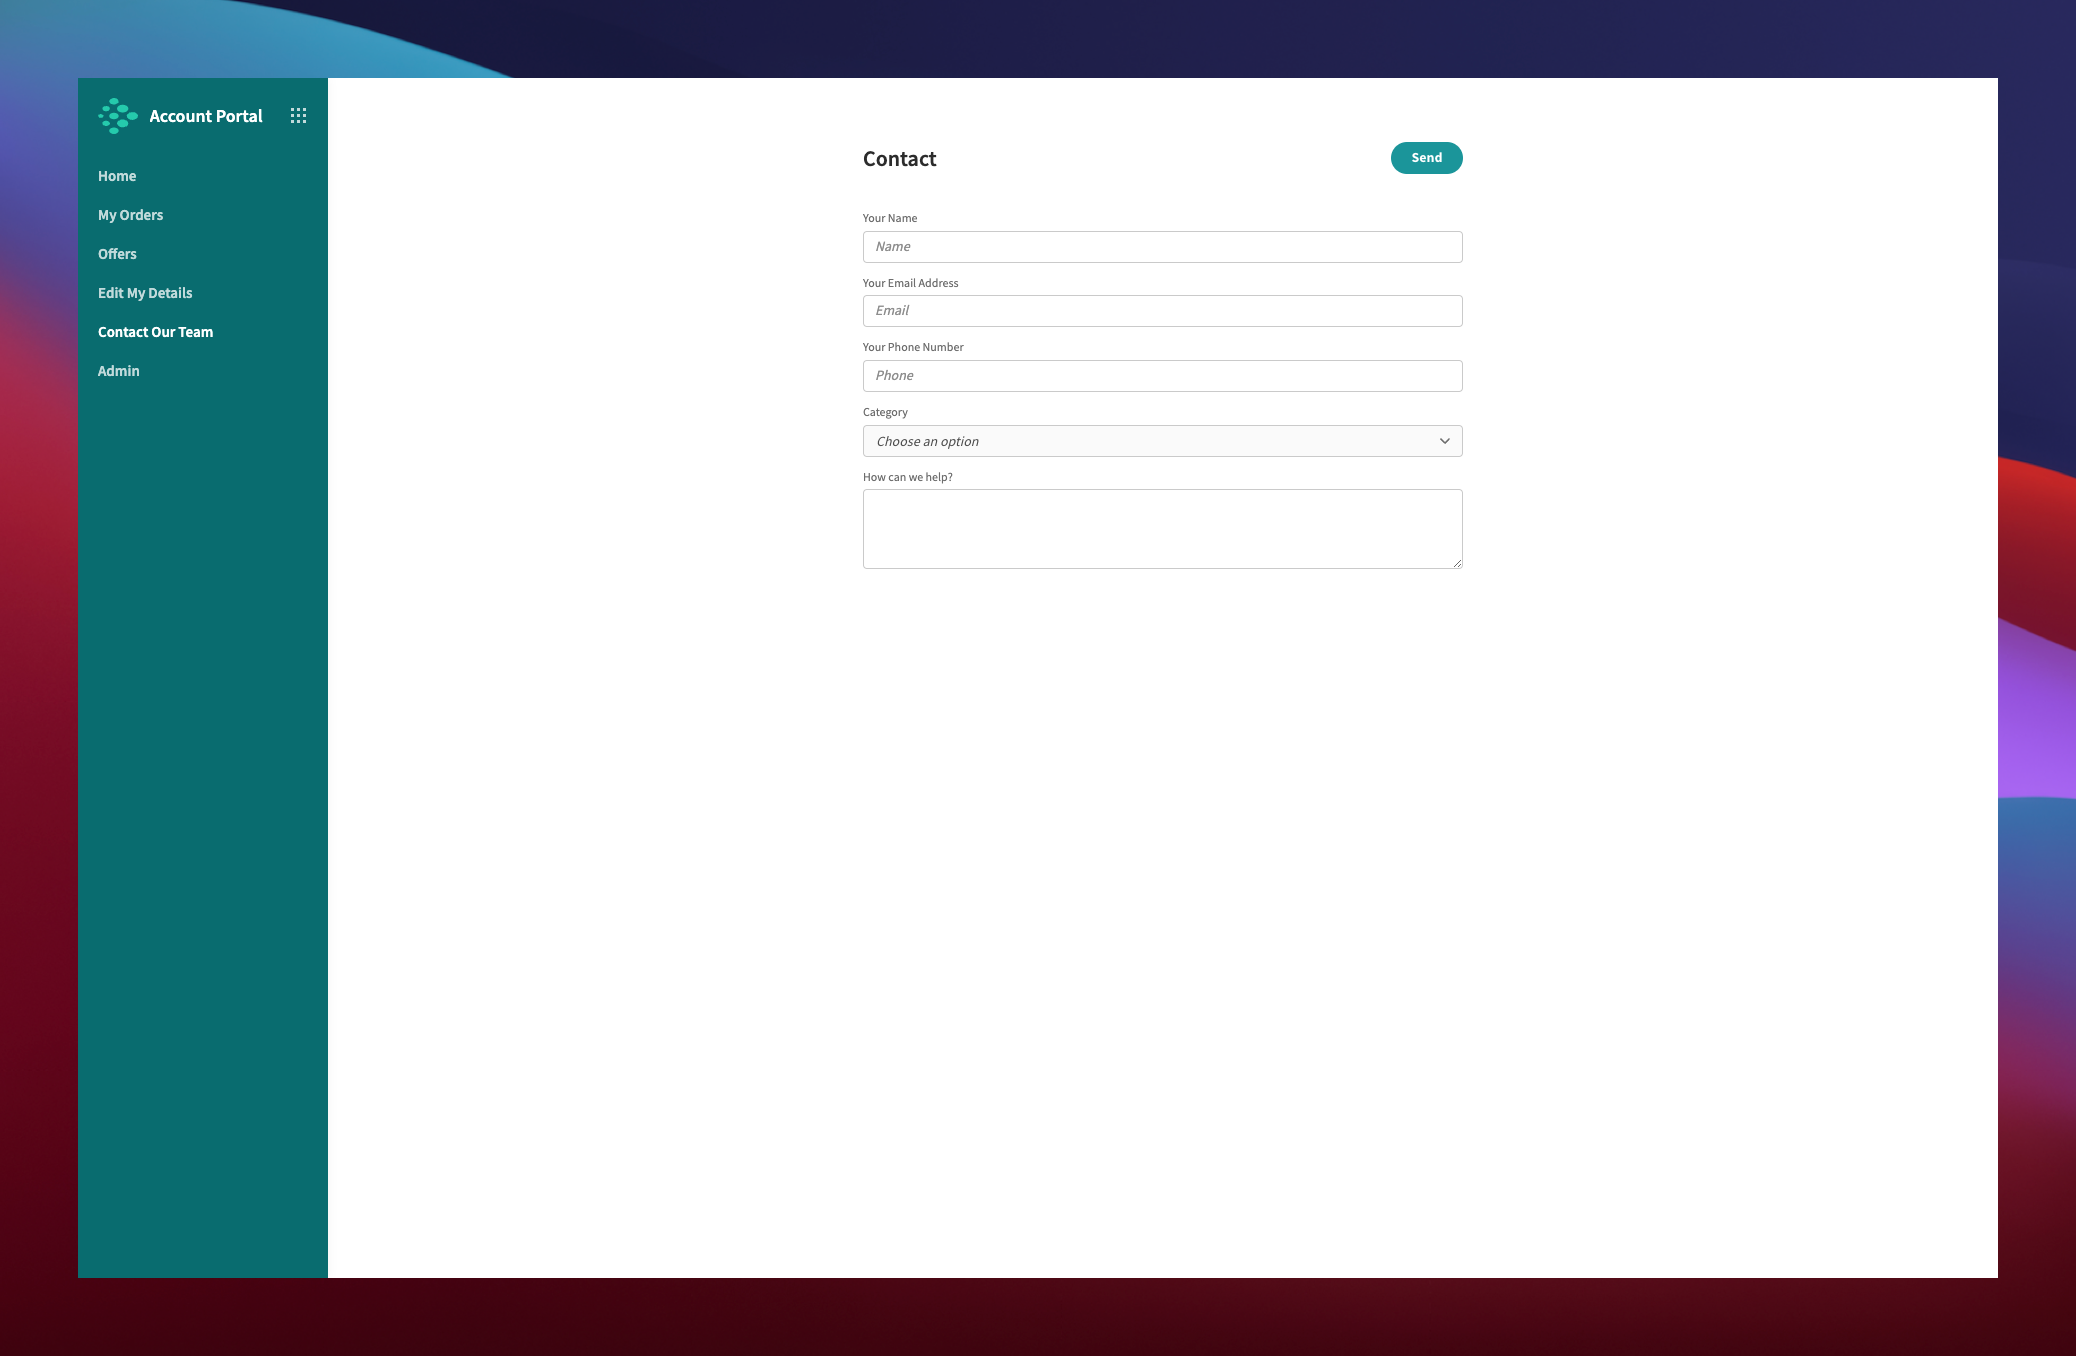 Customer Account Portal Contact Form UI